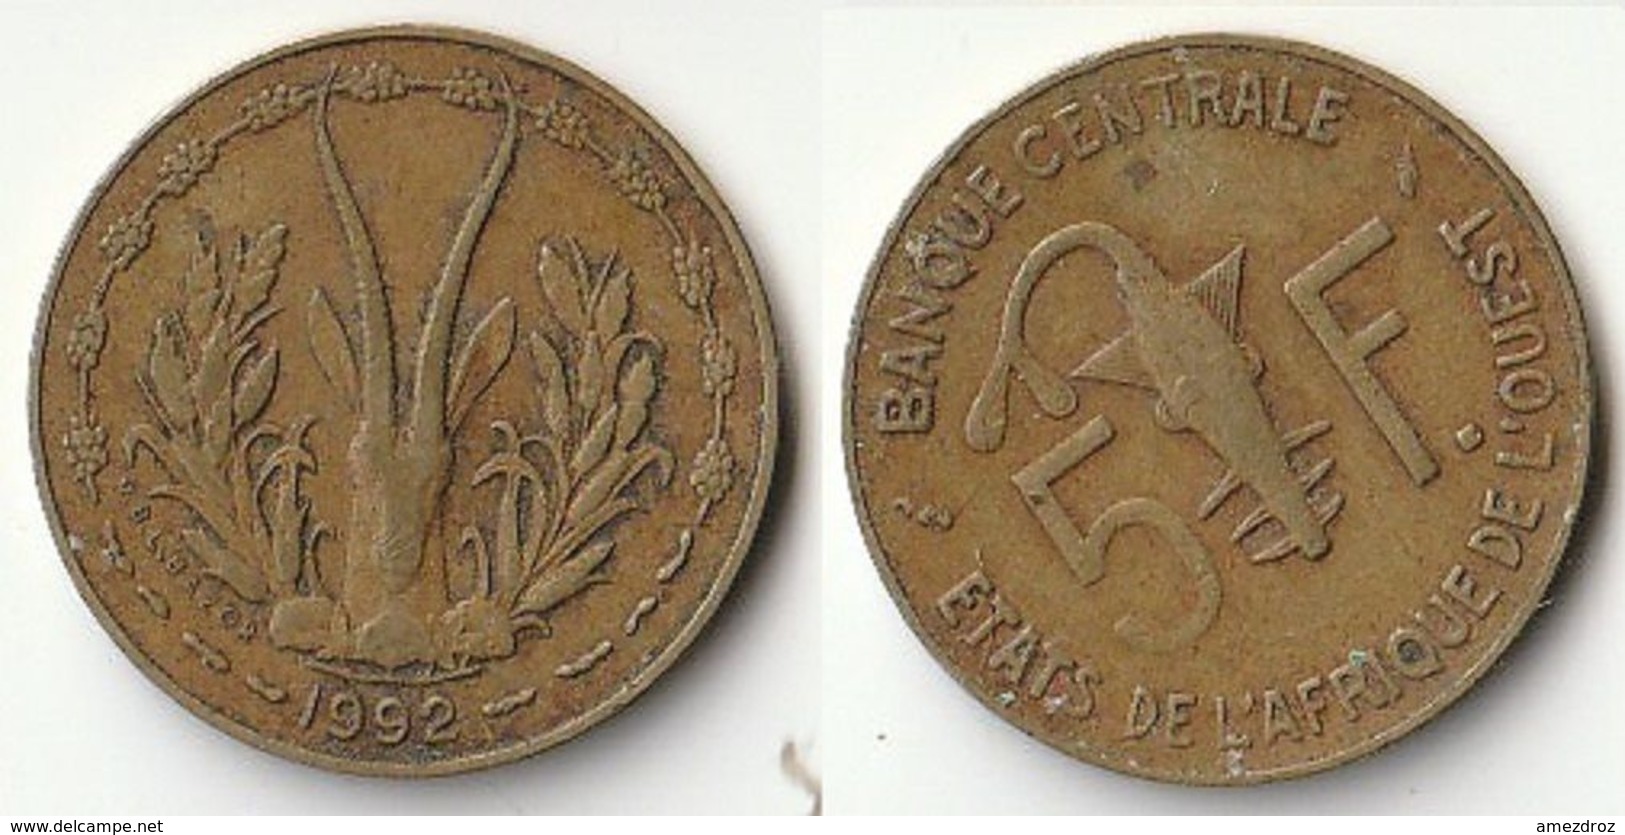 Pièce De 5 Francs CFA XOF 1992 Origine Côte D'Ivoire Afrique De L'Ouest (v) - Ivory Coast